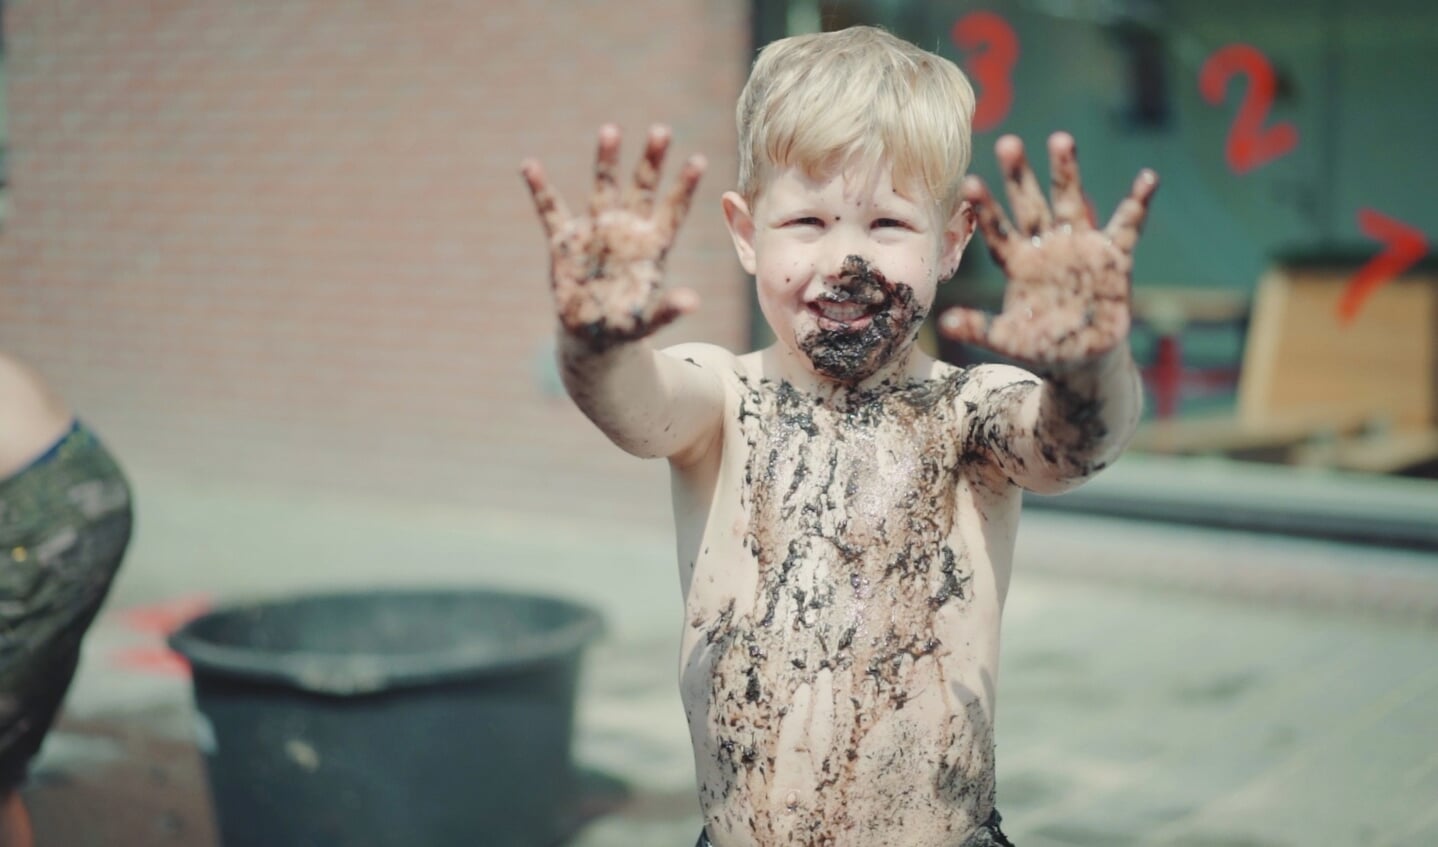 Lekker wroeten in de modder is goed voor de creativiteit.